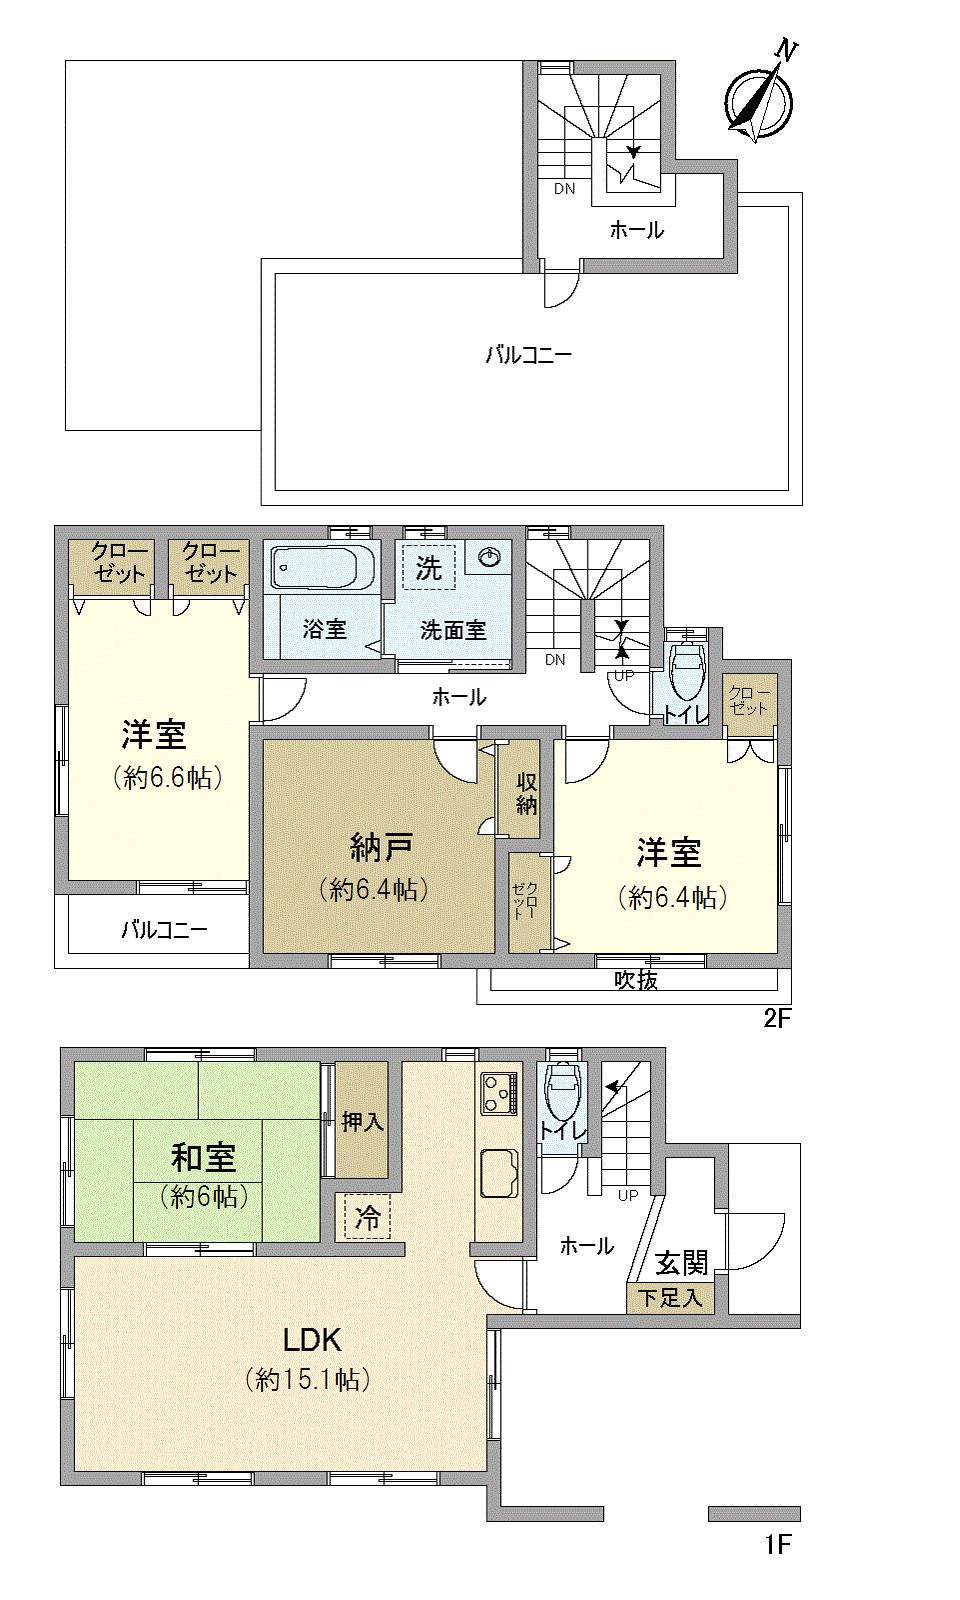 Floor plan. 28.8 million yen, 4LDK, Land area 82.33 sq m , Building area 112.6 sq m